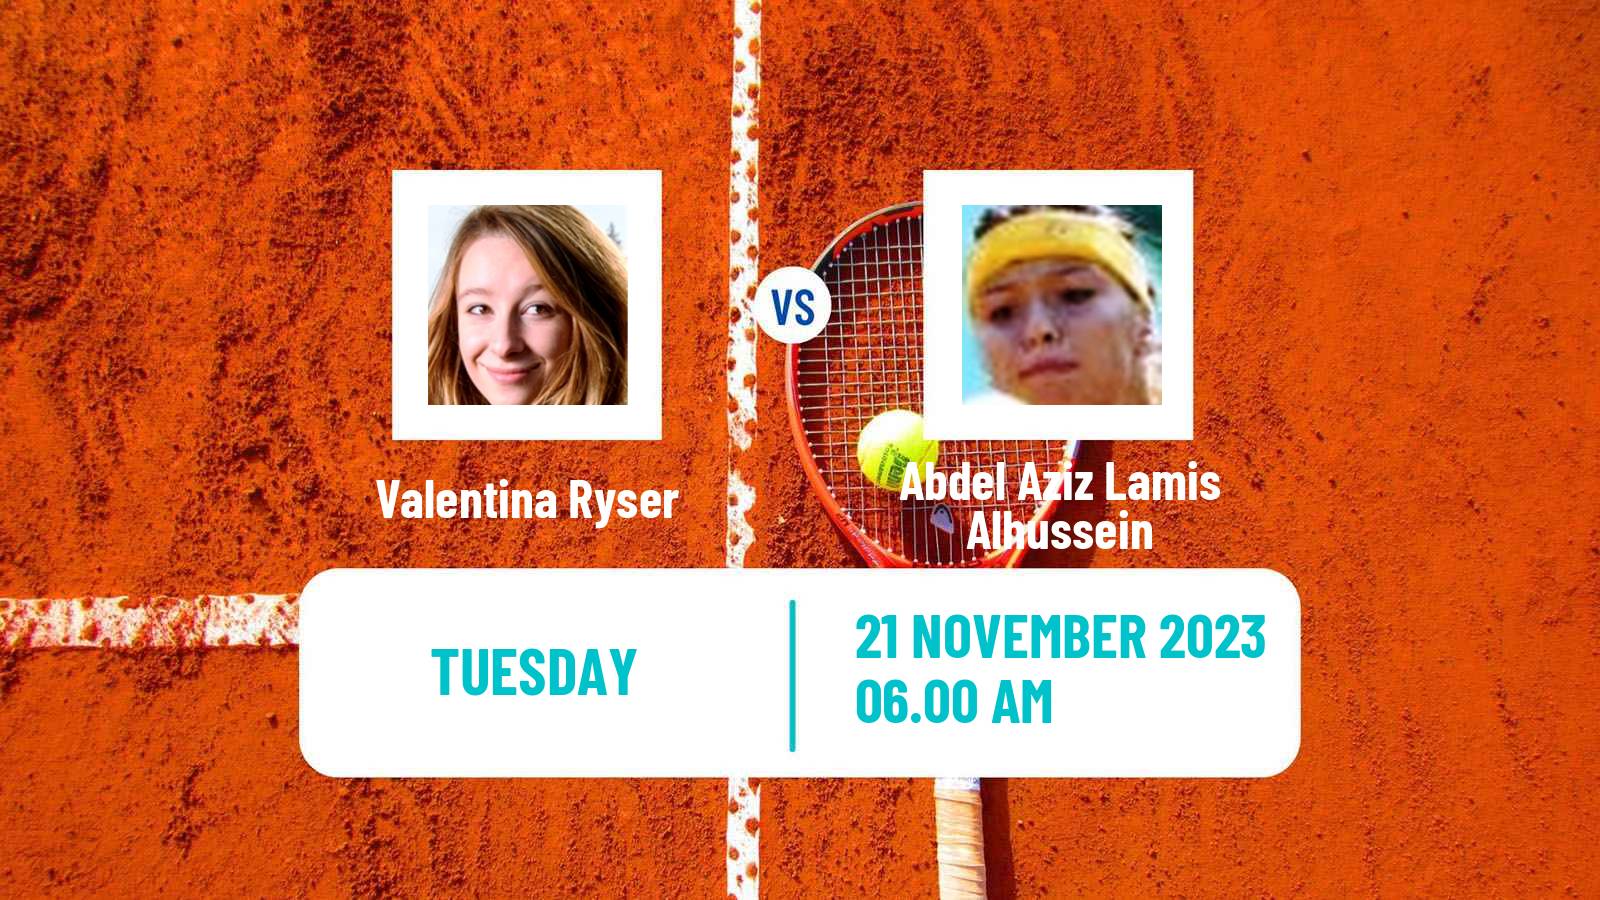 Tennis ITF W25 Limassol Women Valentina Ryser - Abdel Aziz Lamis Alhussein